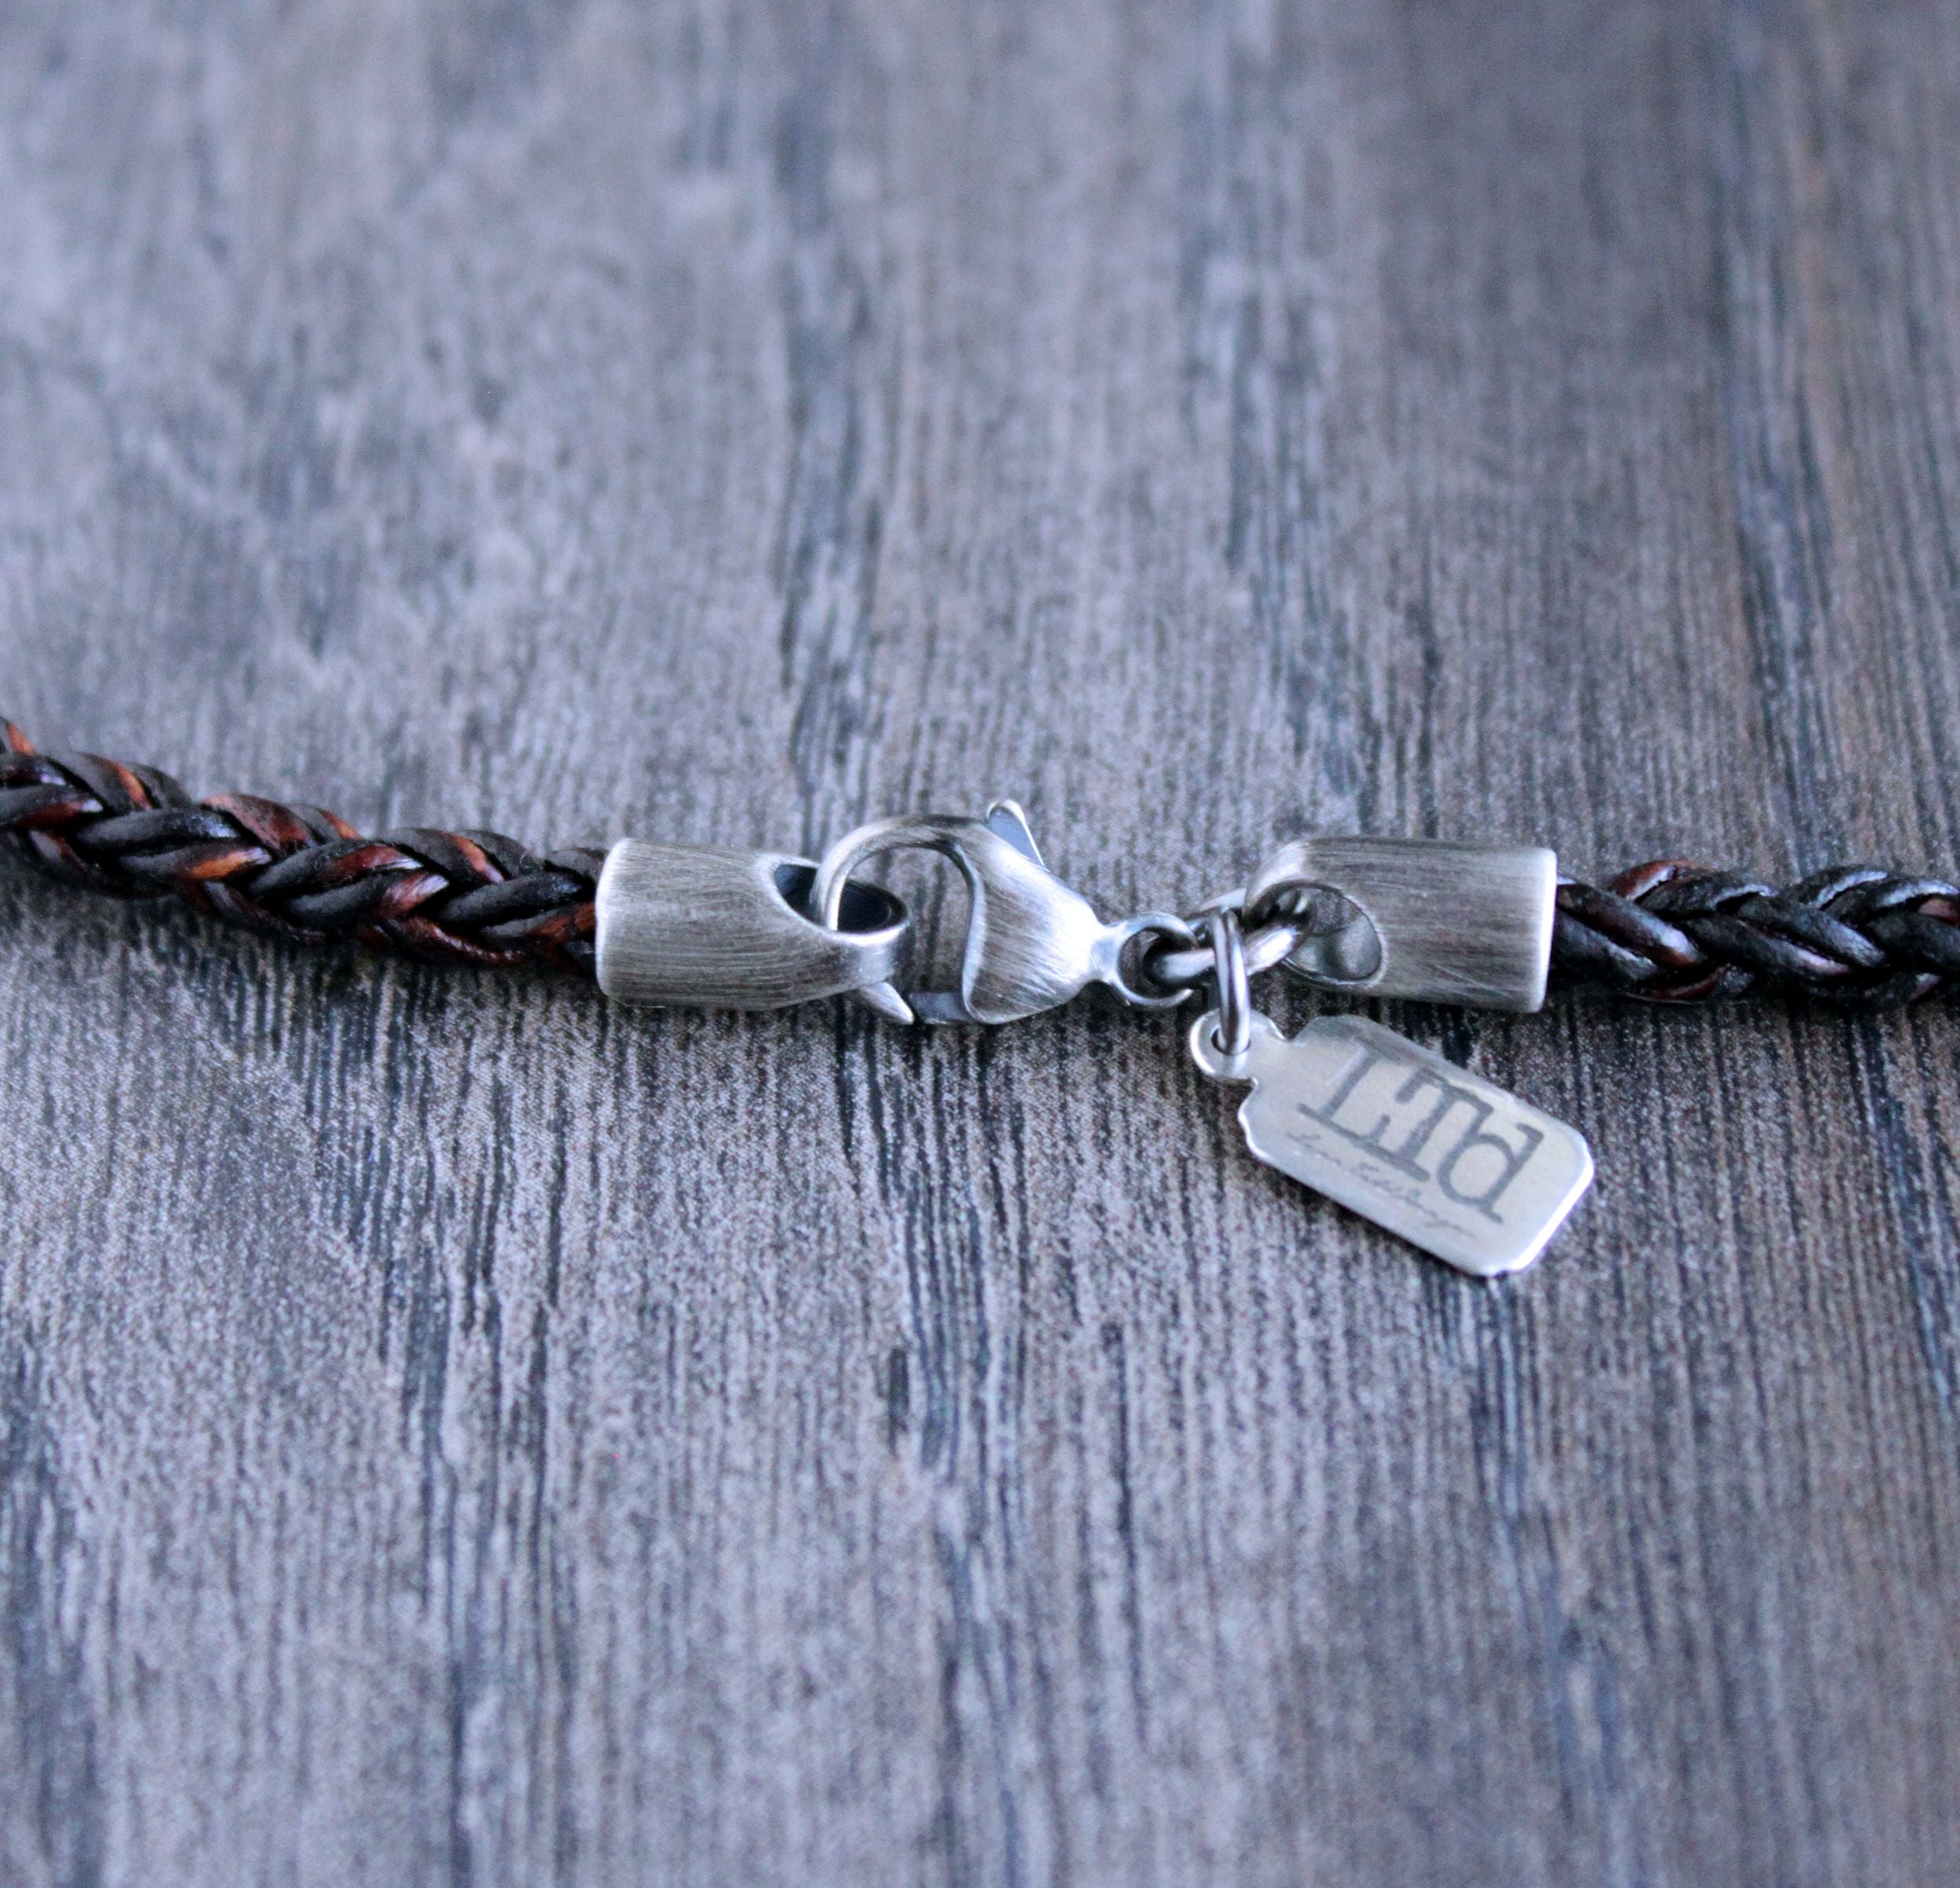 Men's Light Brown Round Braid Leather Necklace – LynnToddDesigns